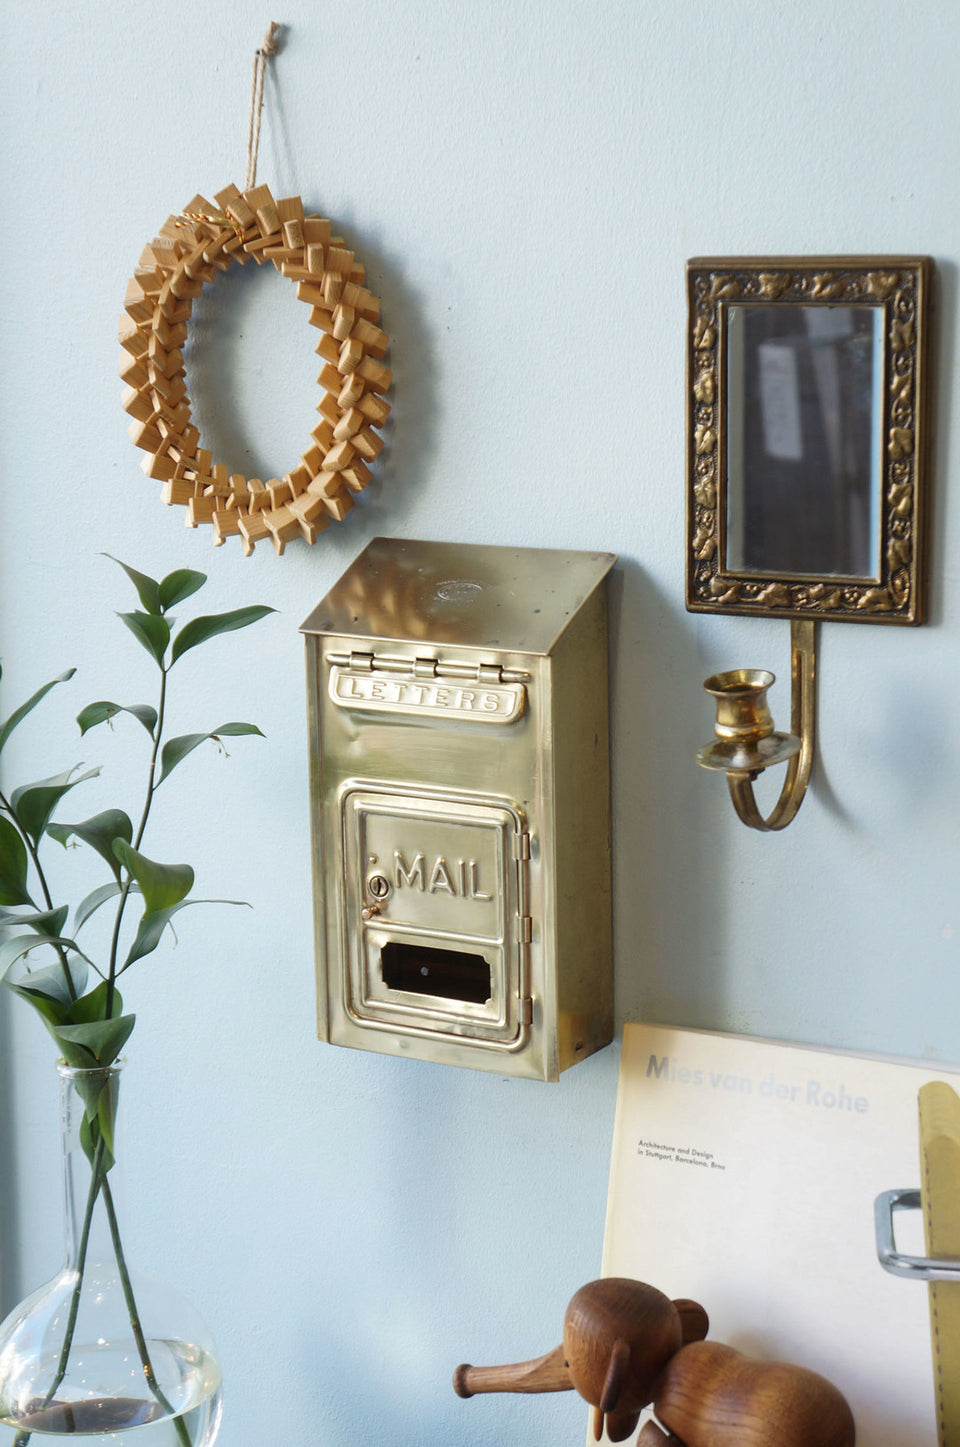 US Vintage Corbin Mail Box/アメリカヴィンテージ コービン メールボックス ポスト 郵便受け インダストリアル インテリア